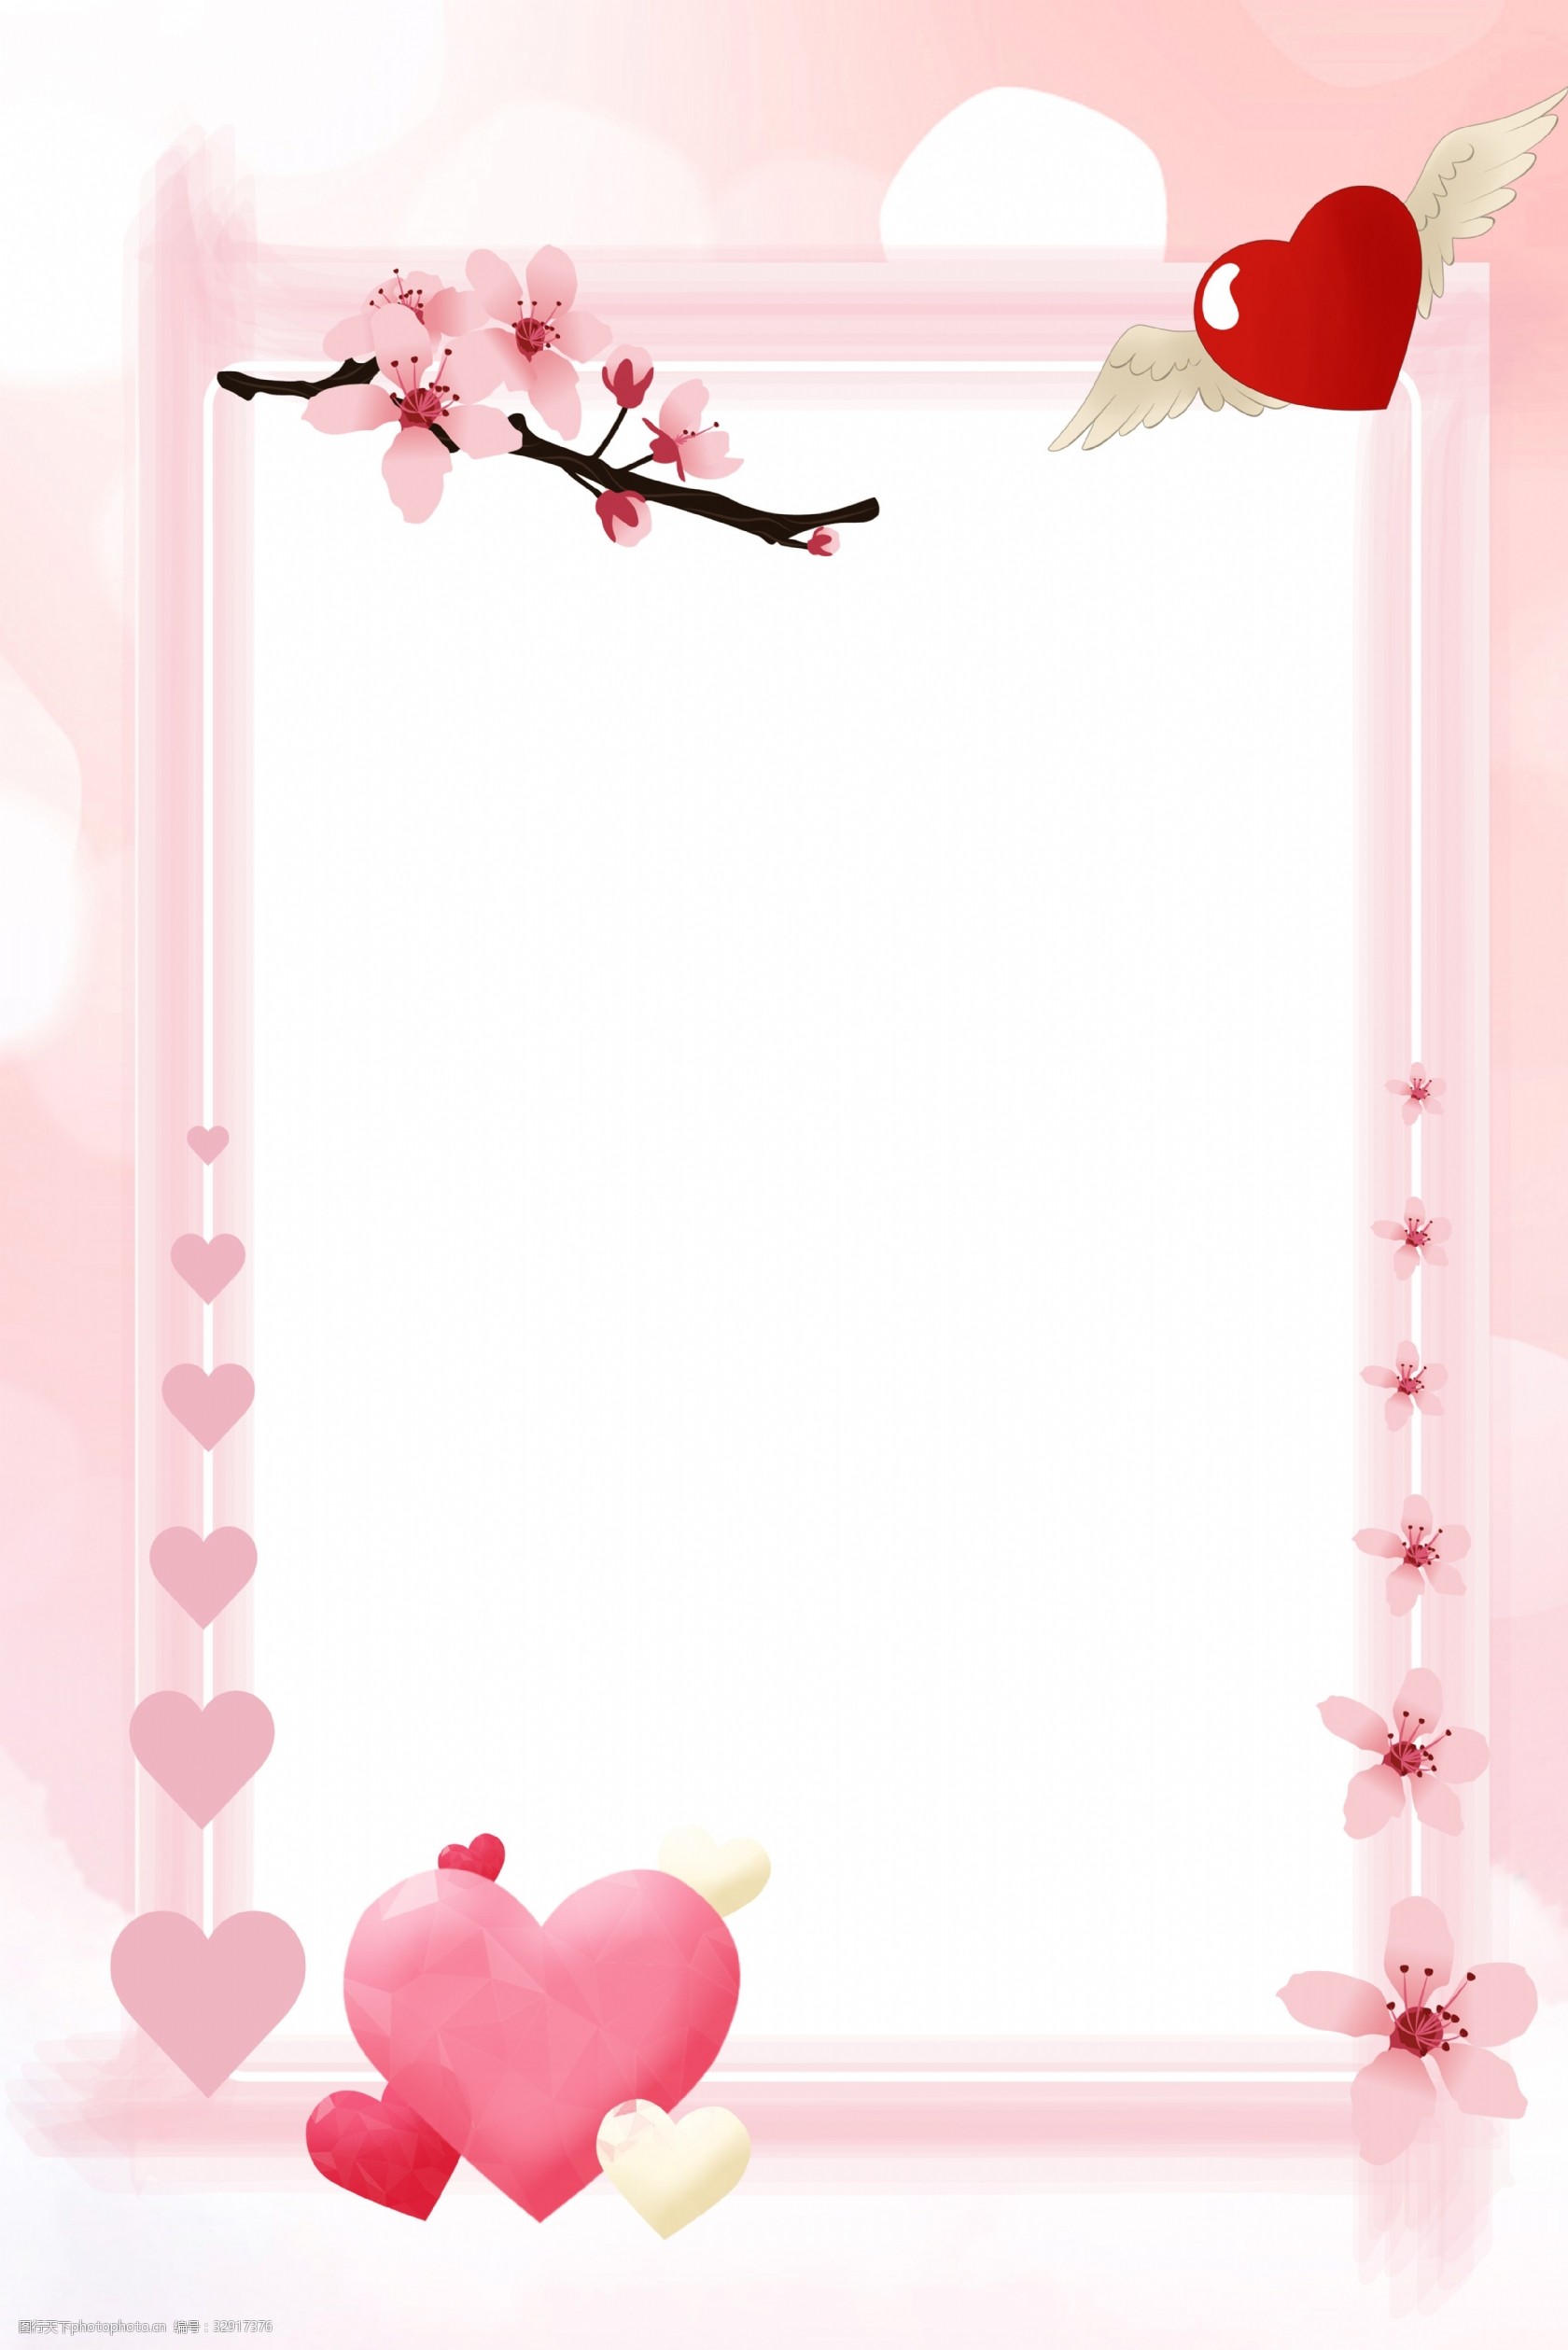 关键词:七夕粉色边框简约背景 七夕 唯美 爱情 爱 粉色 爱心 边框